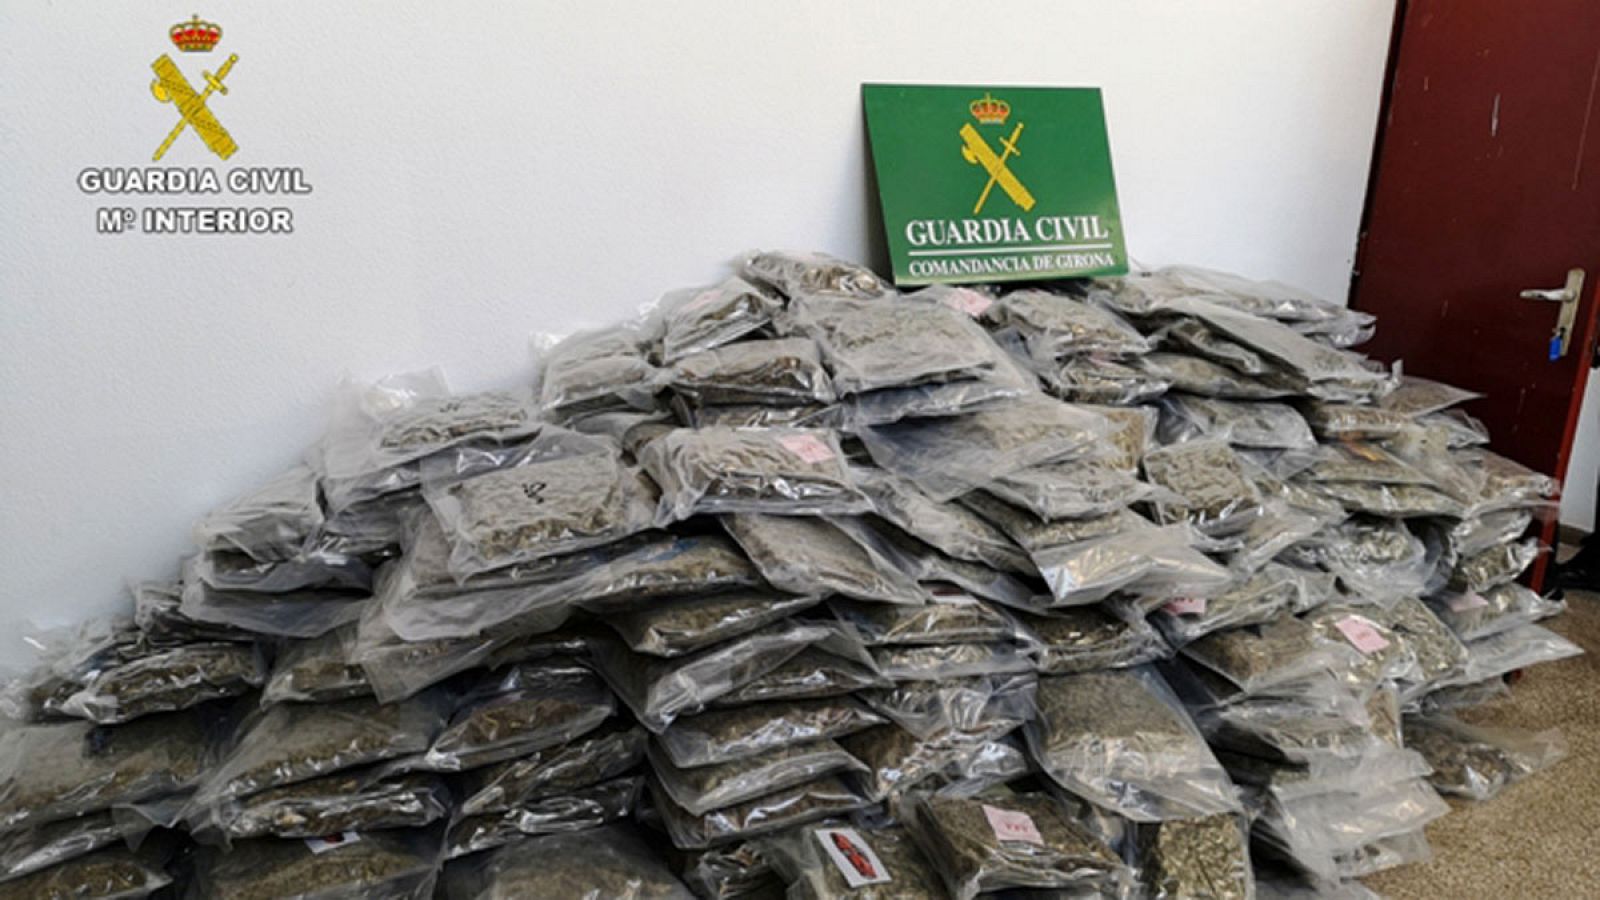 La Guardia Civil incauta 2.700 kilos de marihuana lista para consumir, el mayor alijo hasta el momento